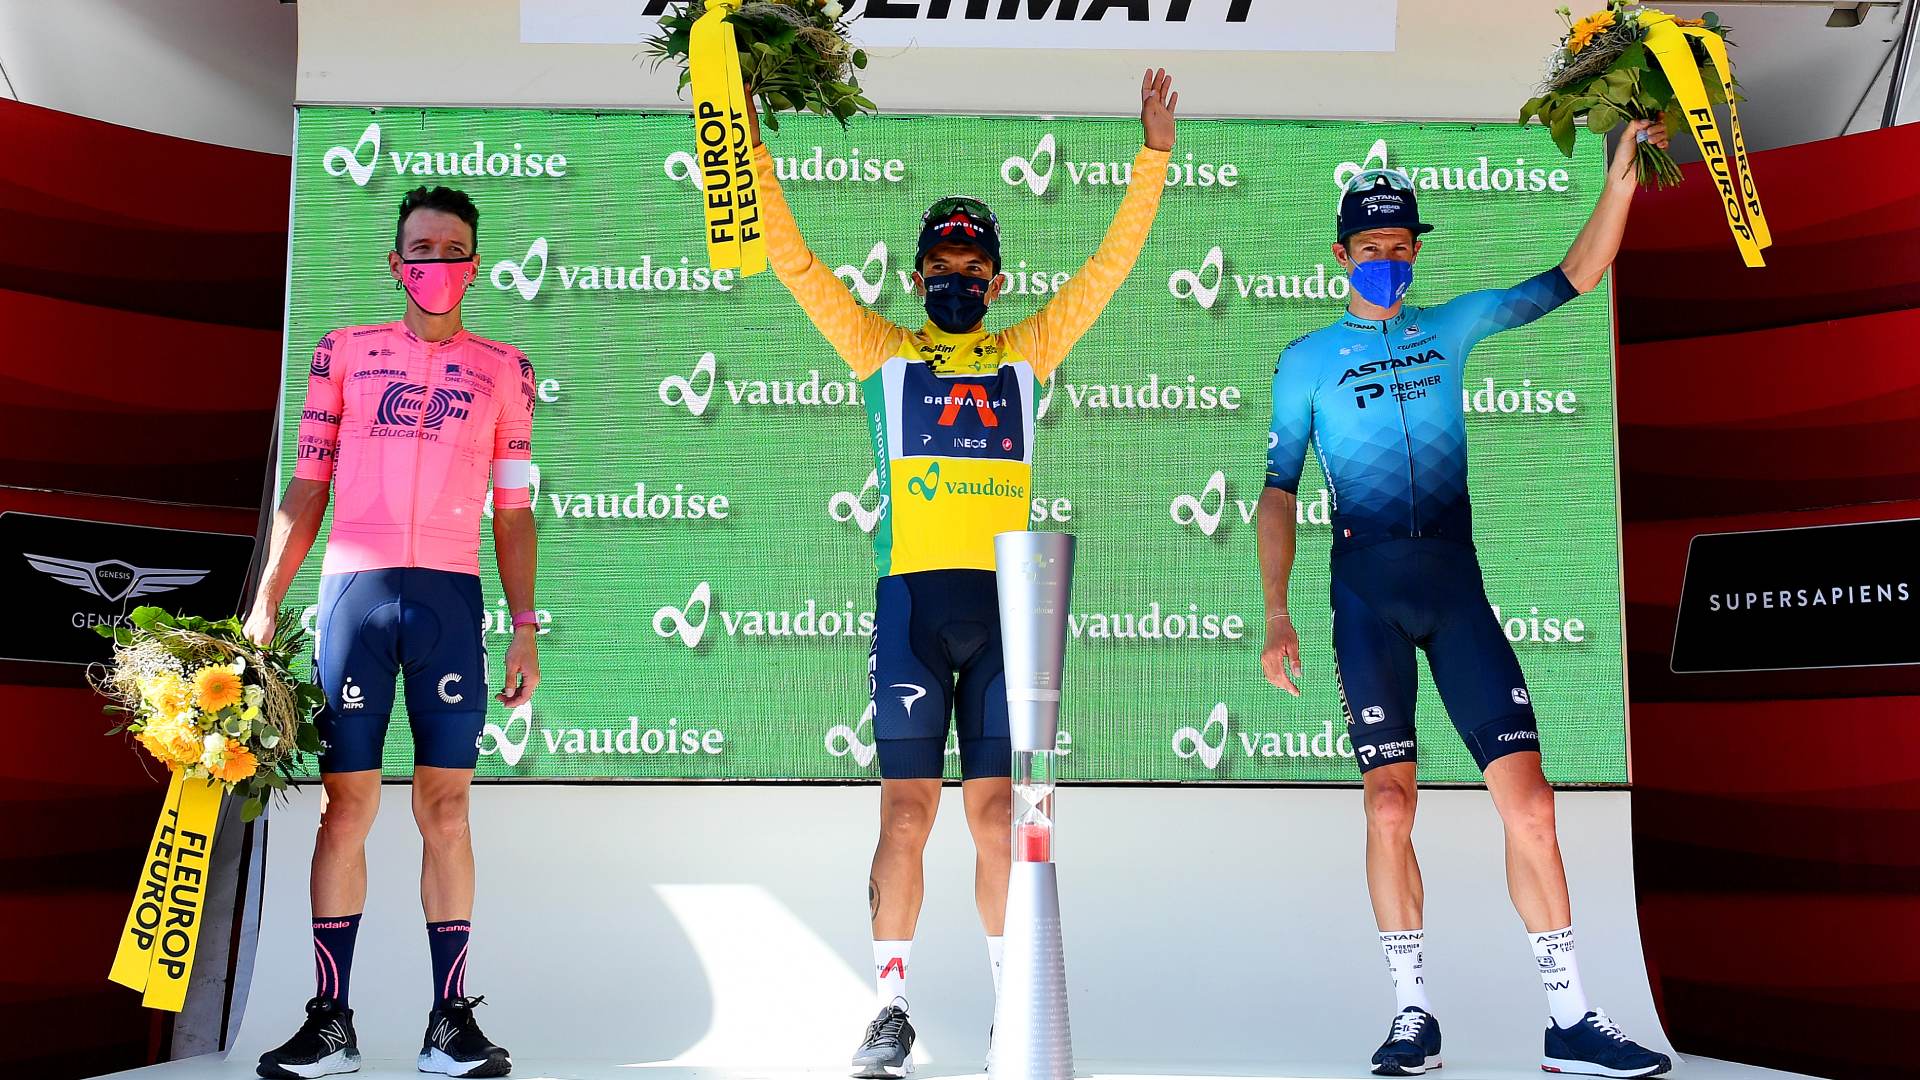 Il podio finale del Tour de Suisse 2021 vinto da Richard Carapaz (foto Getty Images)